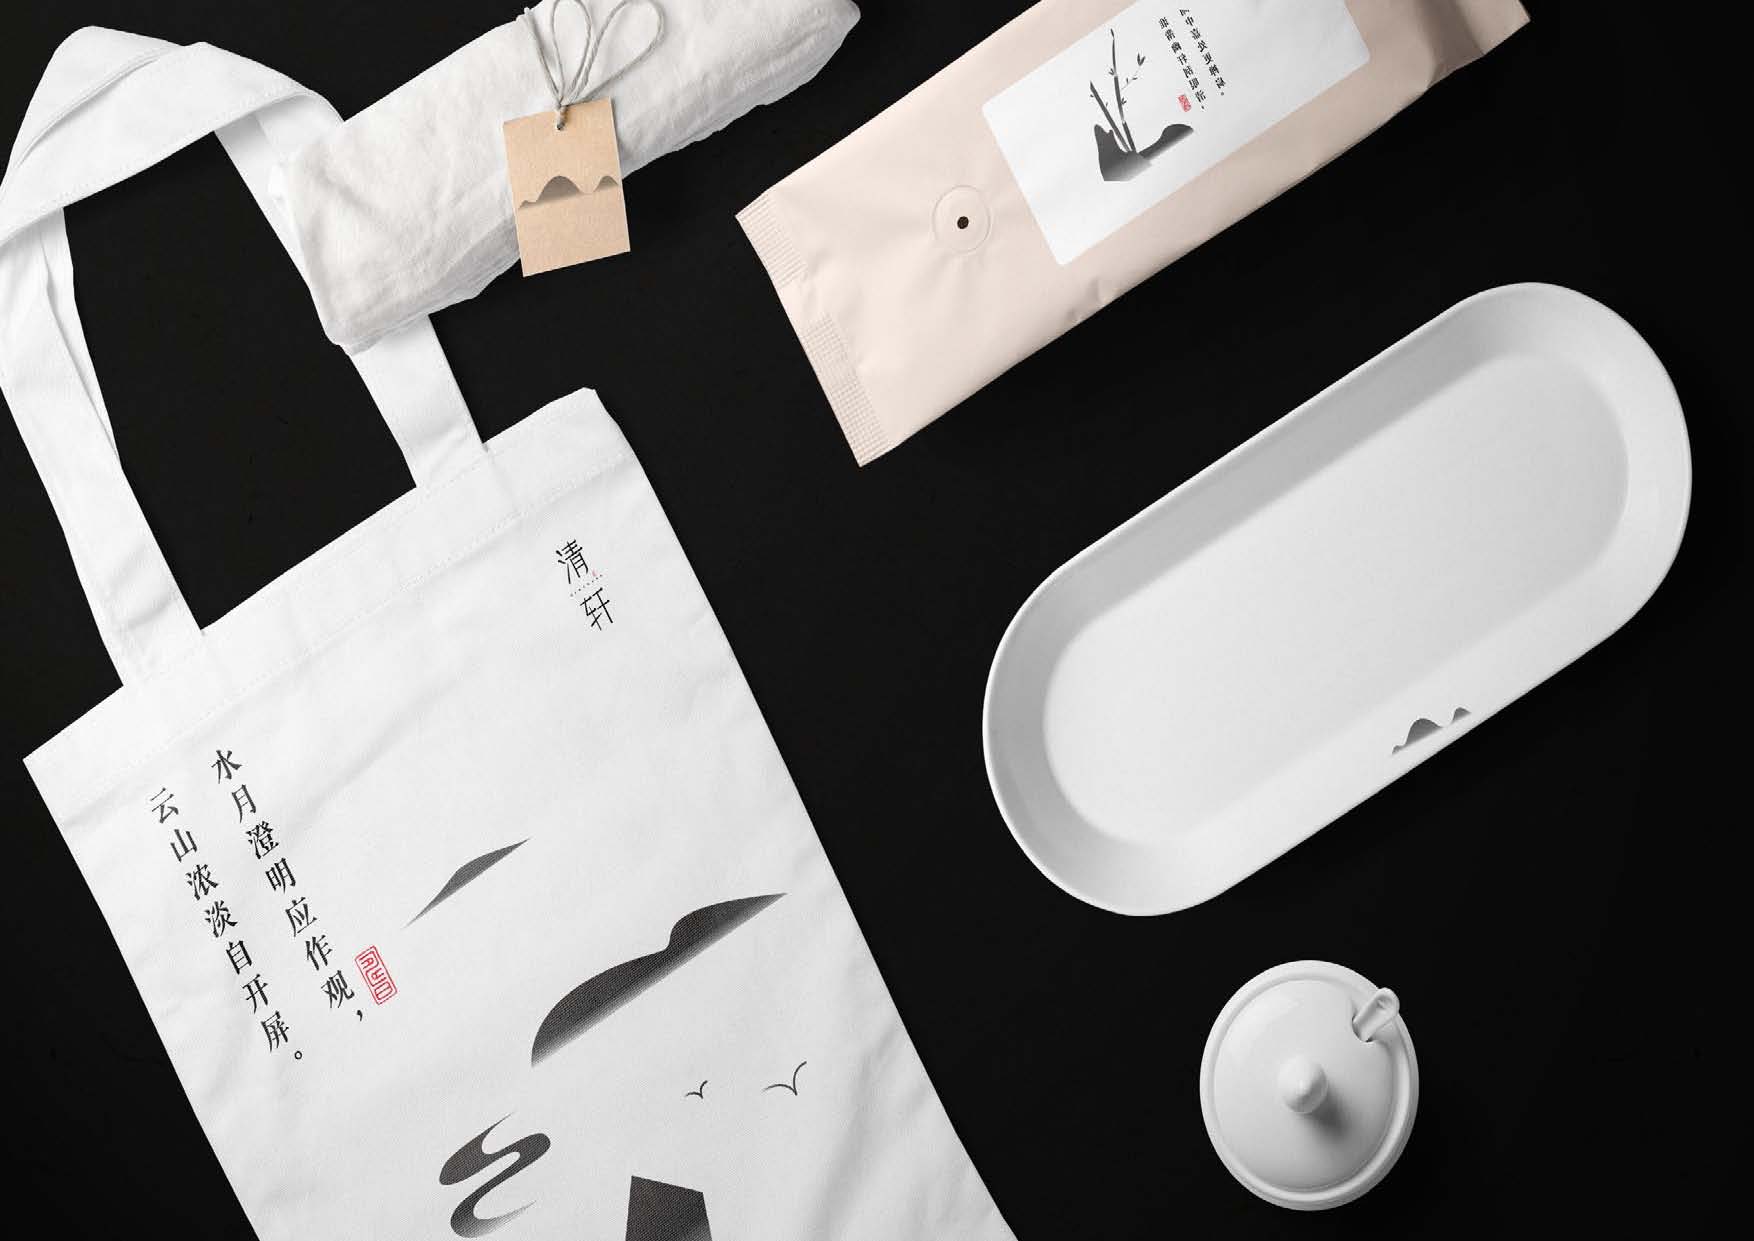 茶饮vi设计vi全案设计餐饮vi设计中式vi设计中国风